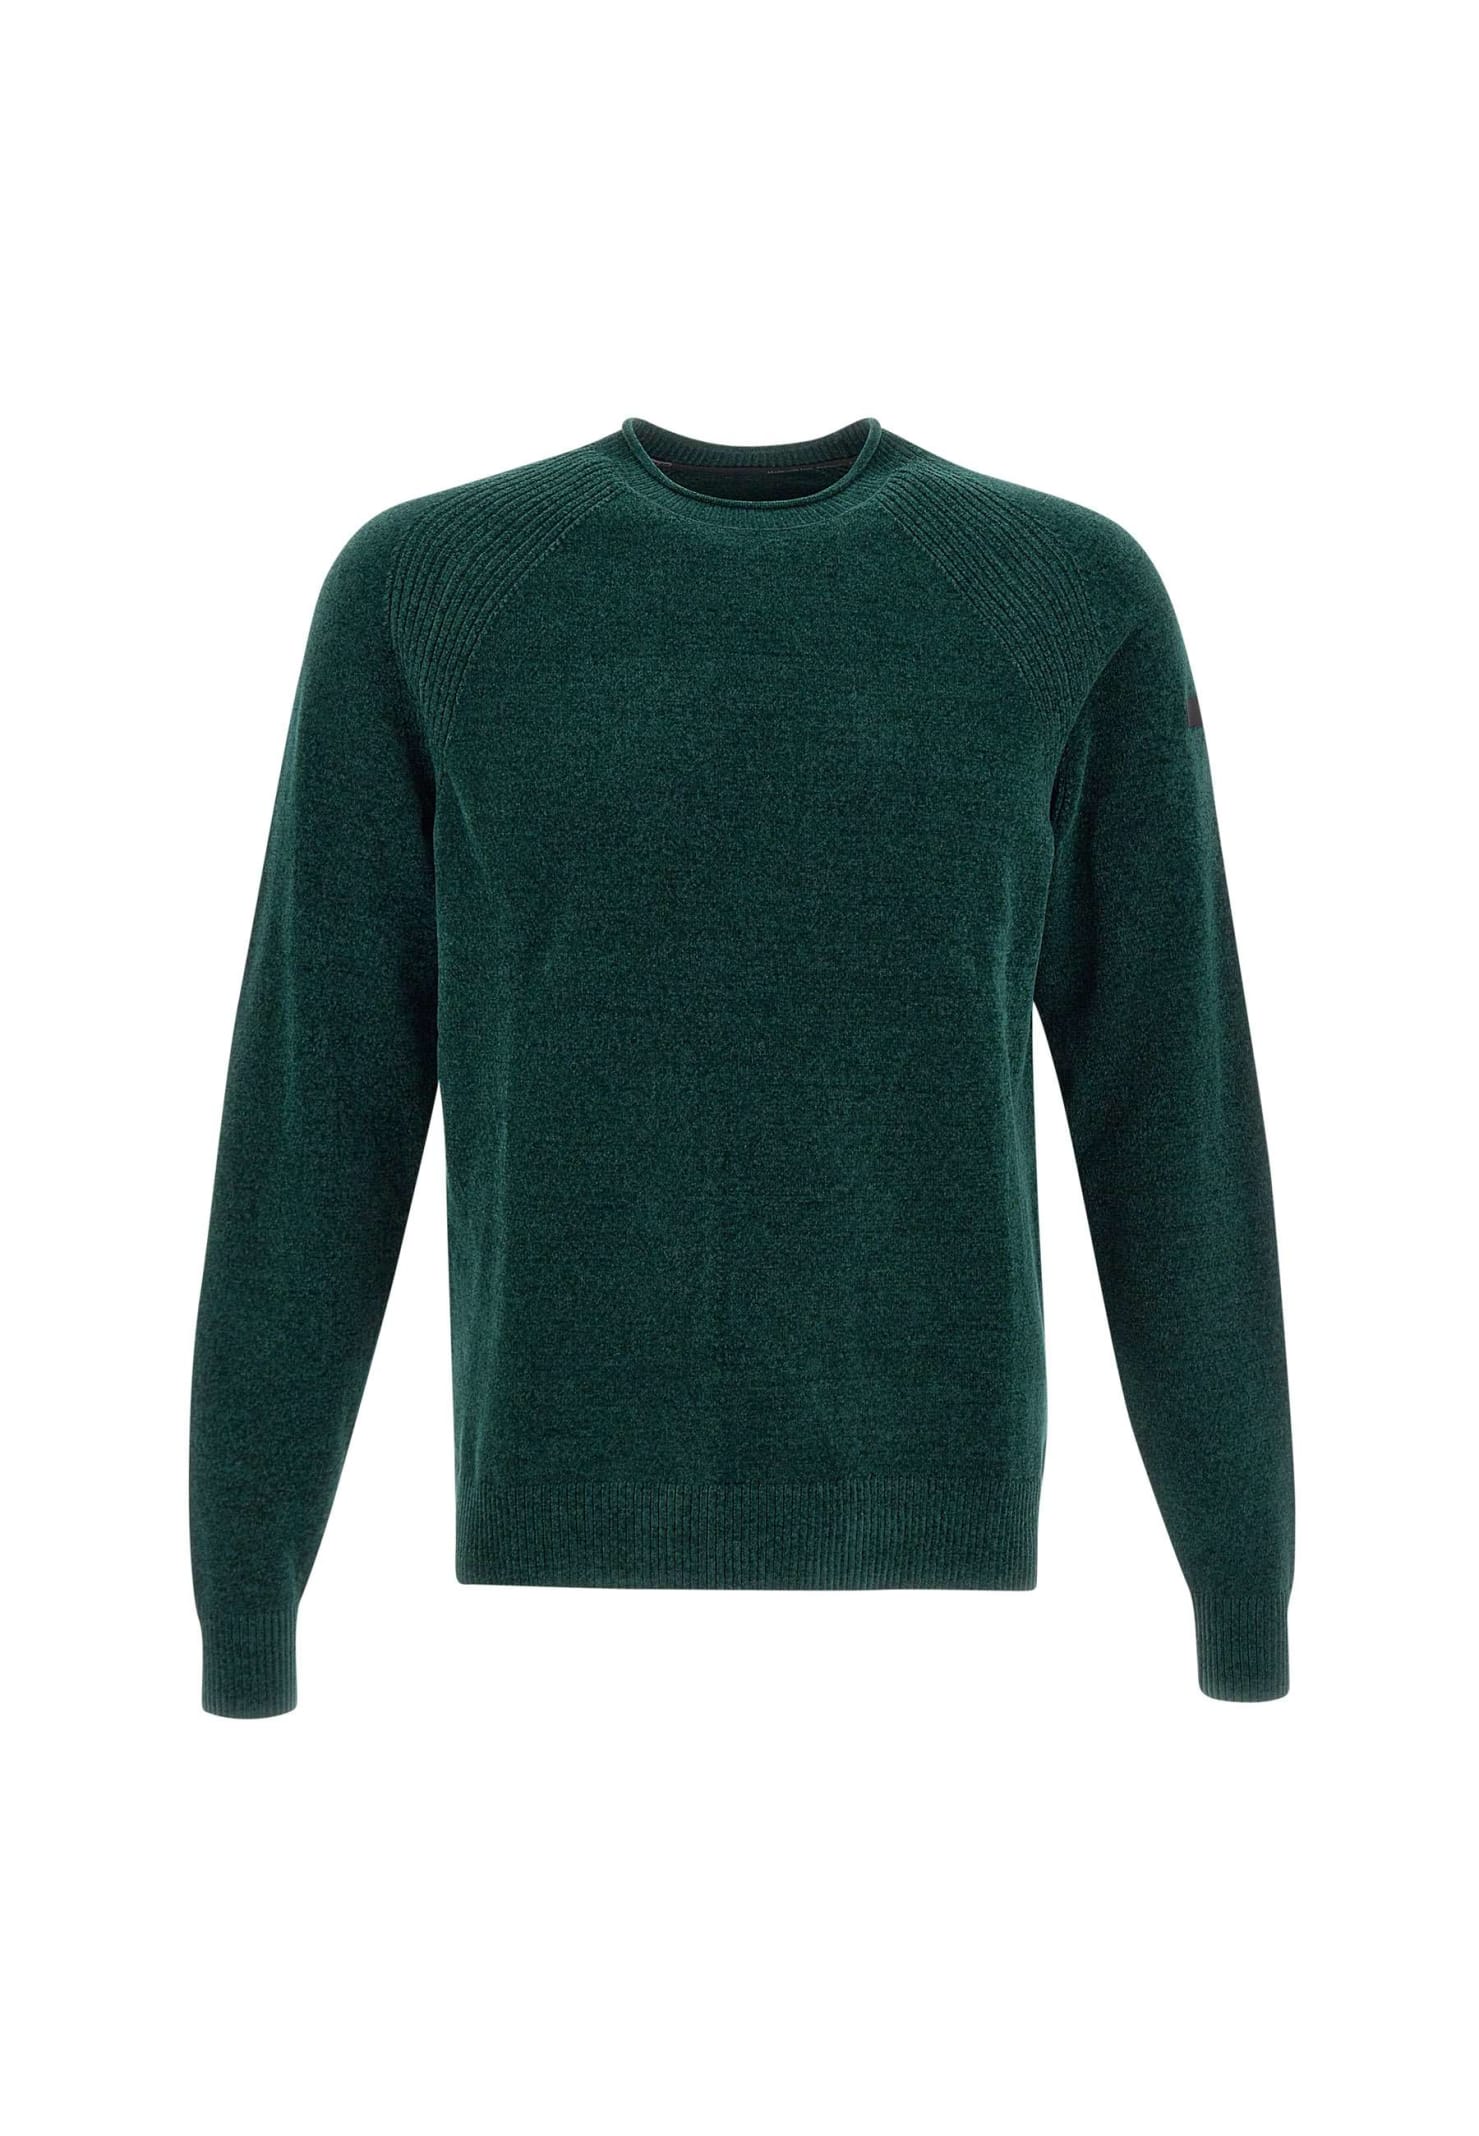 rrd - roberto ricci design velvet sweater